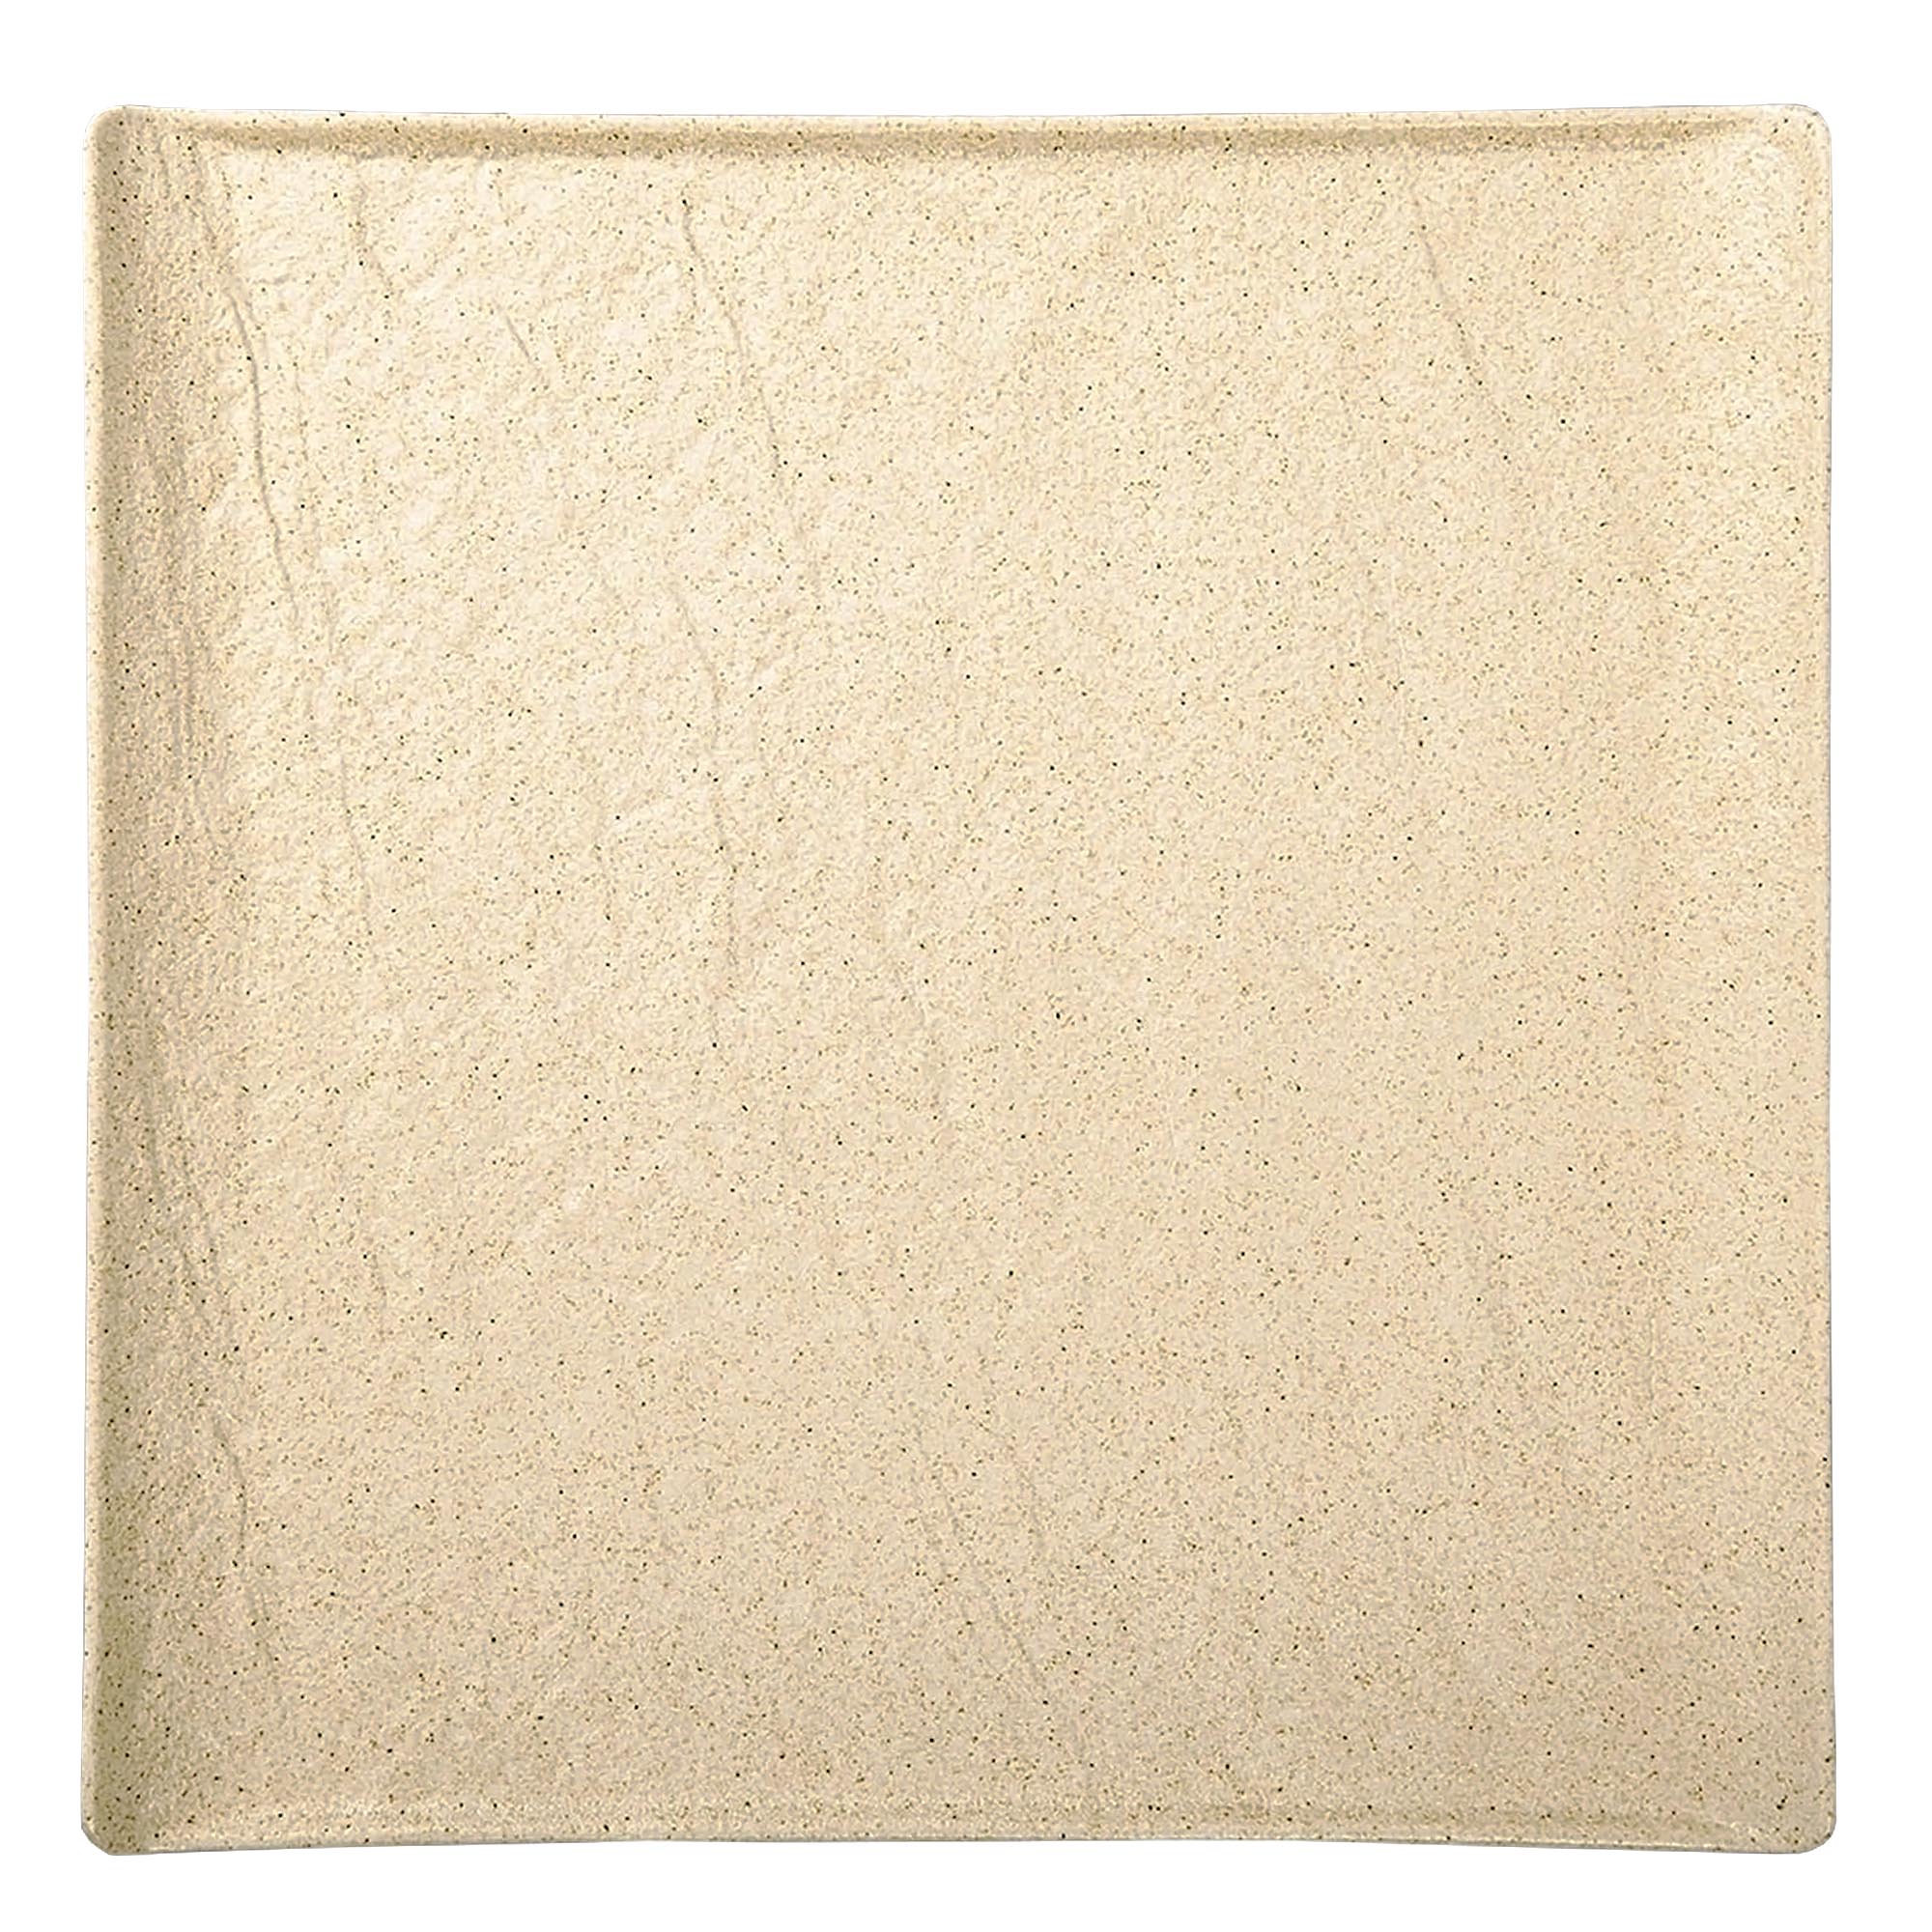 Тарелка квадратная Wilmax SandStone фарфор 17х17 см тарелка wilmax sandstone фарфор 25 см